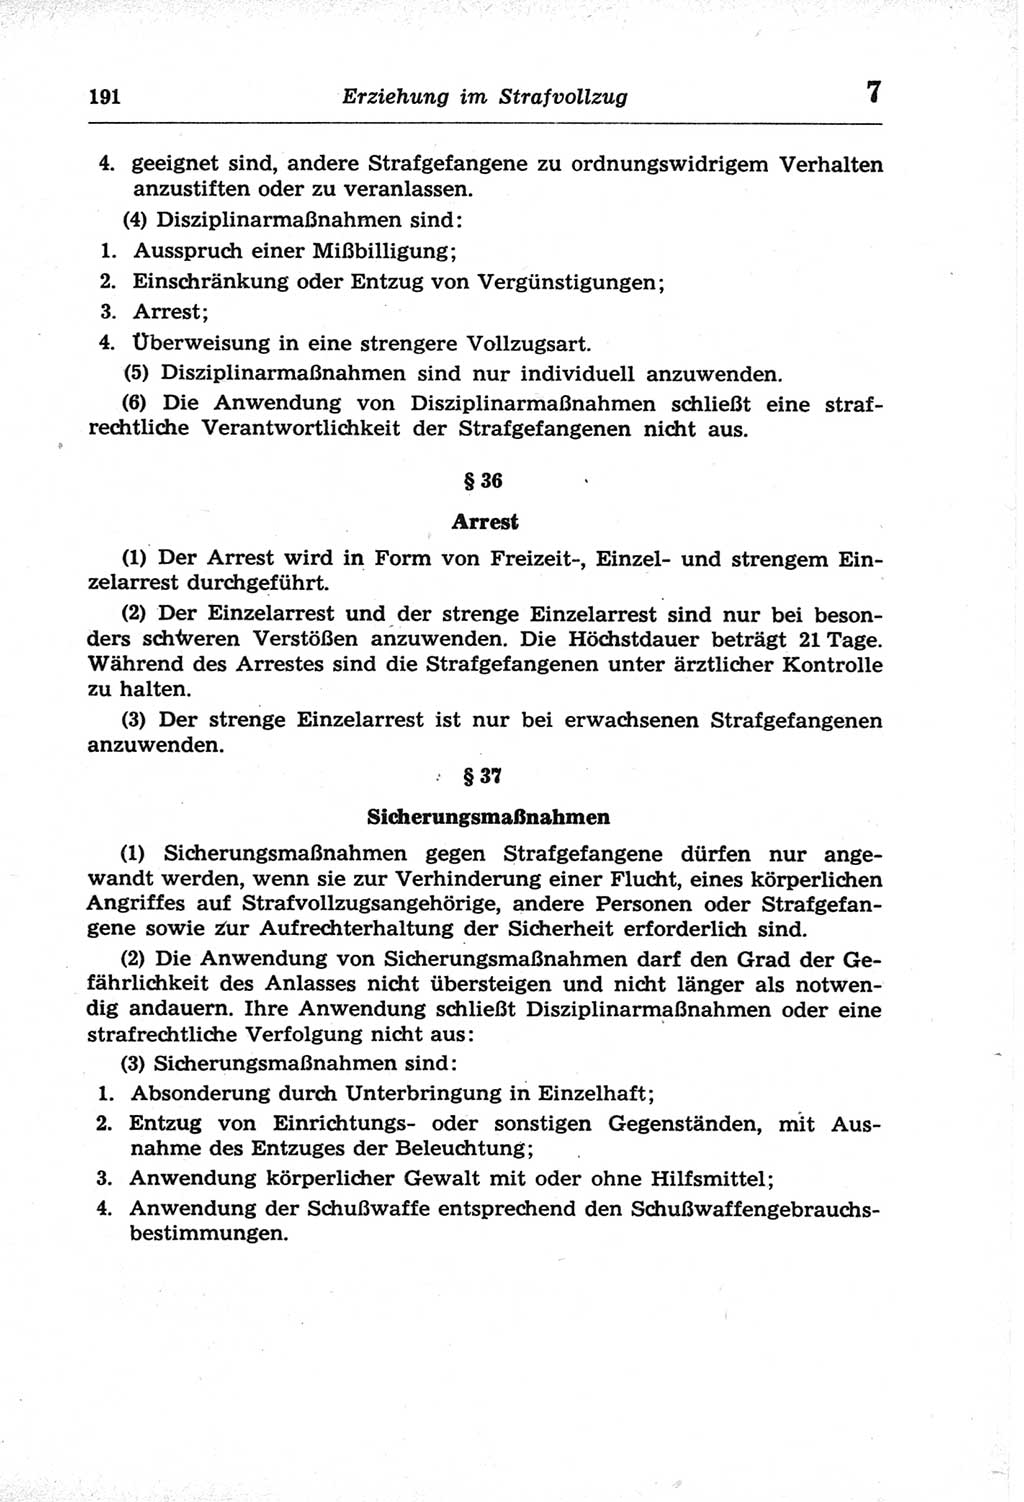 Strafprozeßordnung (StPO) der Deutschen Demokratischen Republik (DDR) und angrenzende Gesetze und Bestimmungen 1968, Seite 191 (StPO Ges. Bstgn. DDR 1968, S. 191)